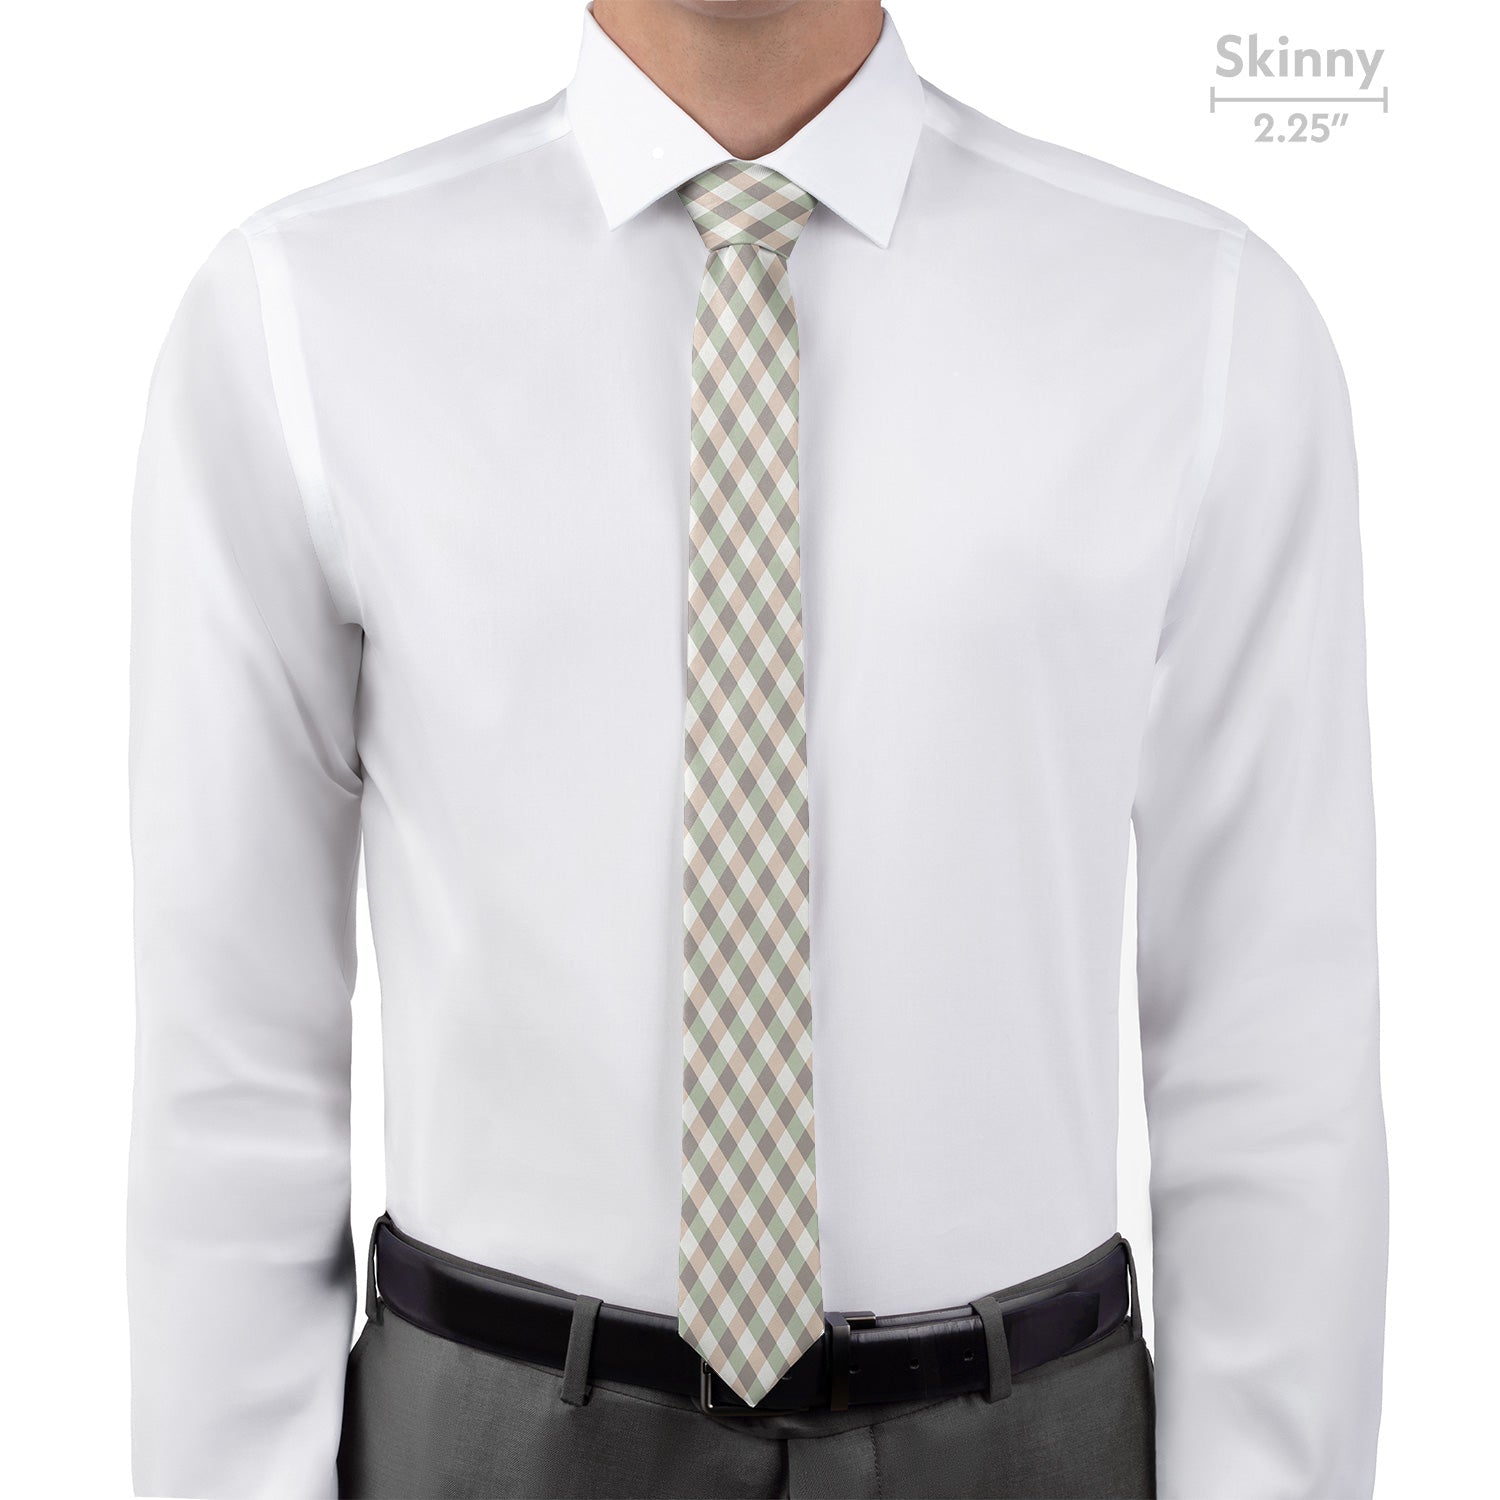 Diamond Plaid Necktie - Skinny - Knotty Tie Co.